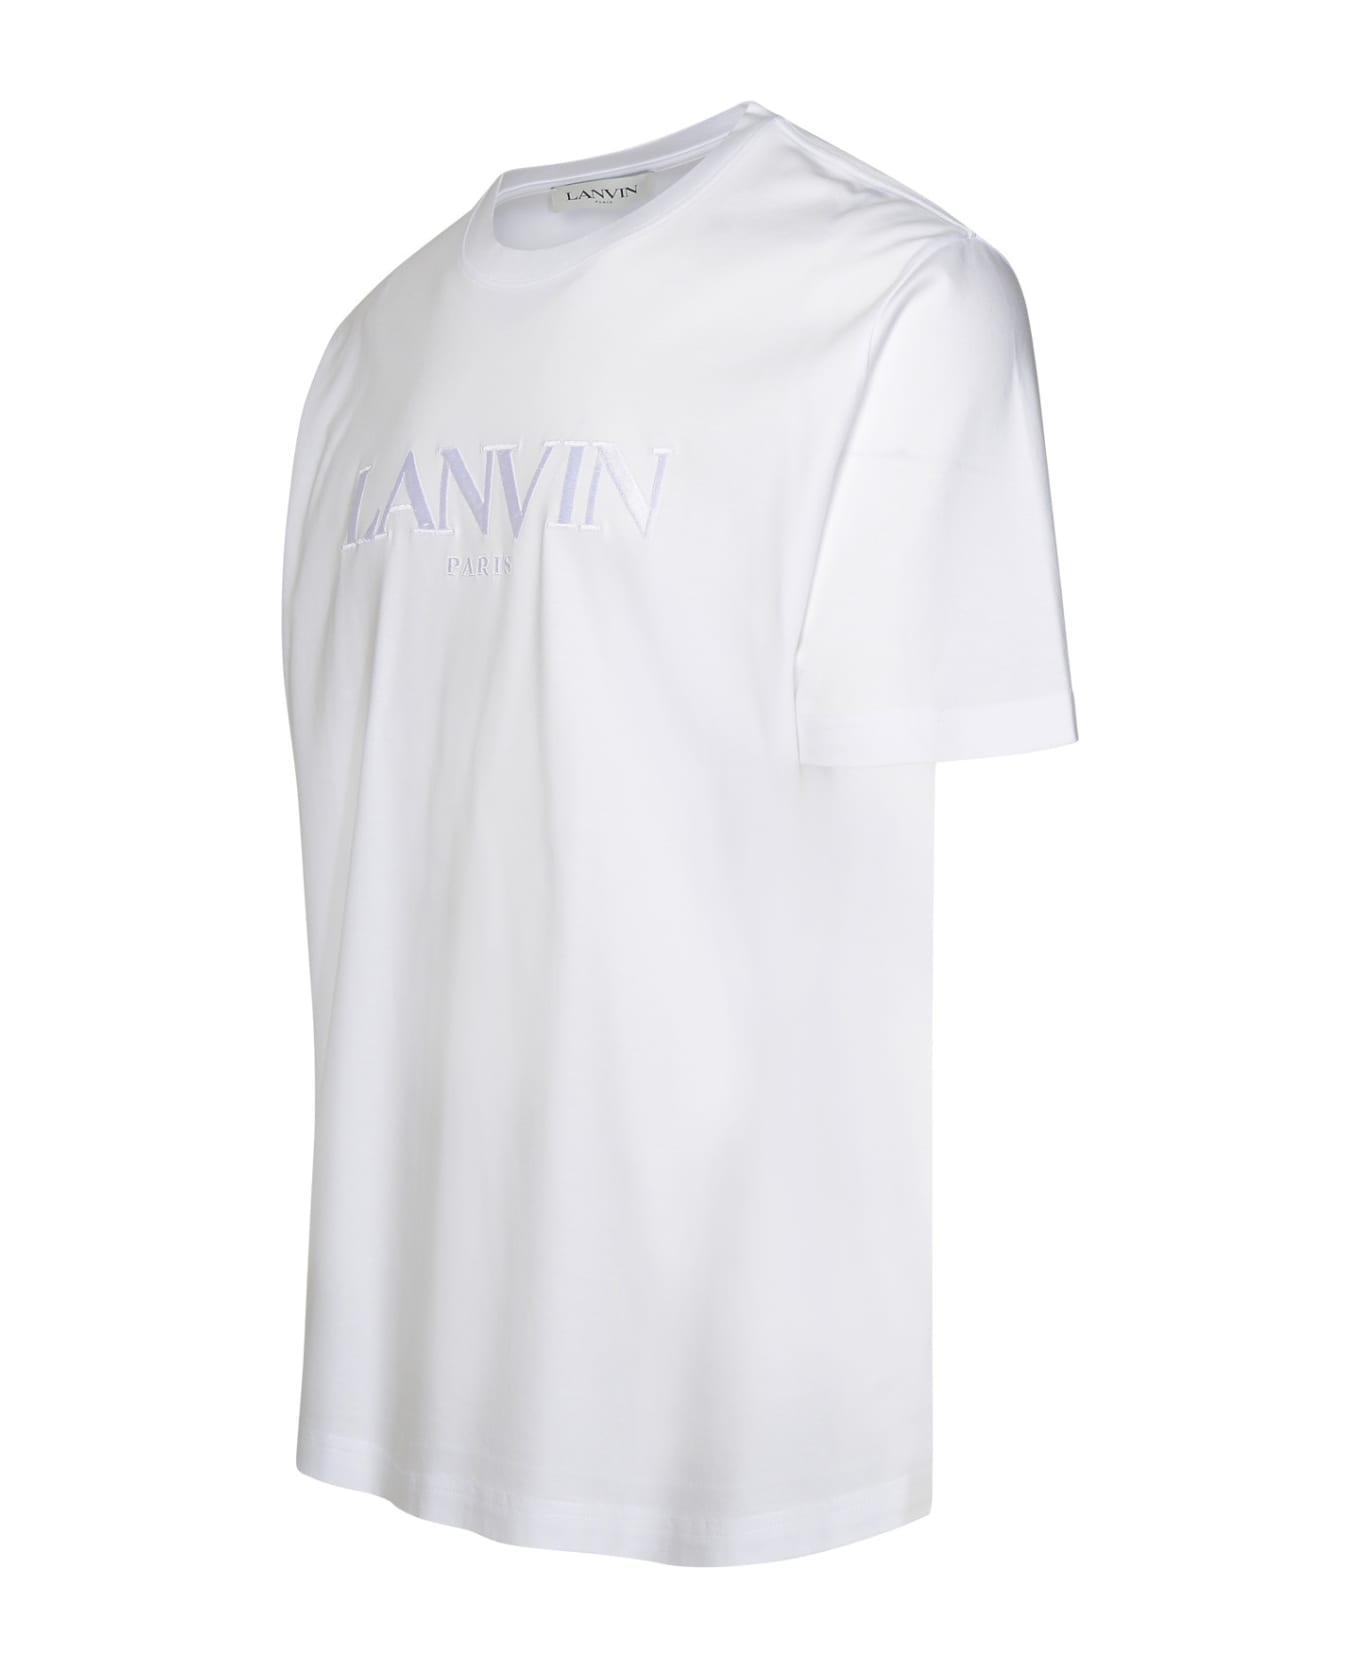 Lanvin White Cotton T-shirt - Bianco